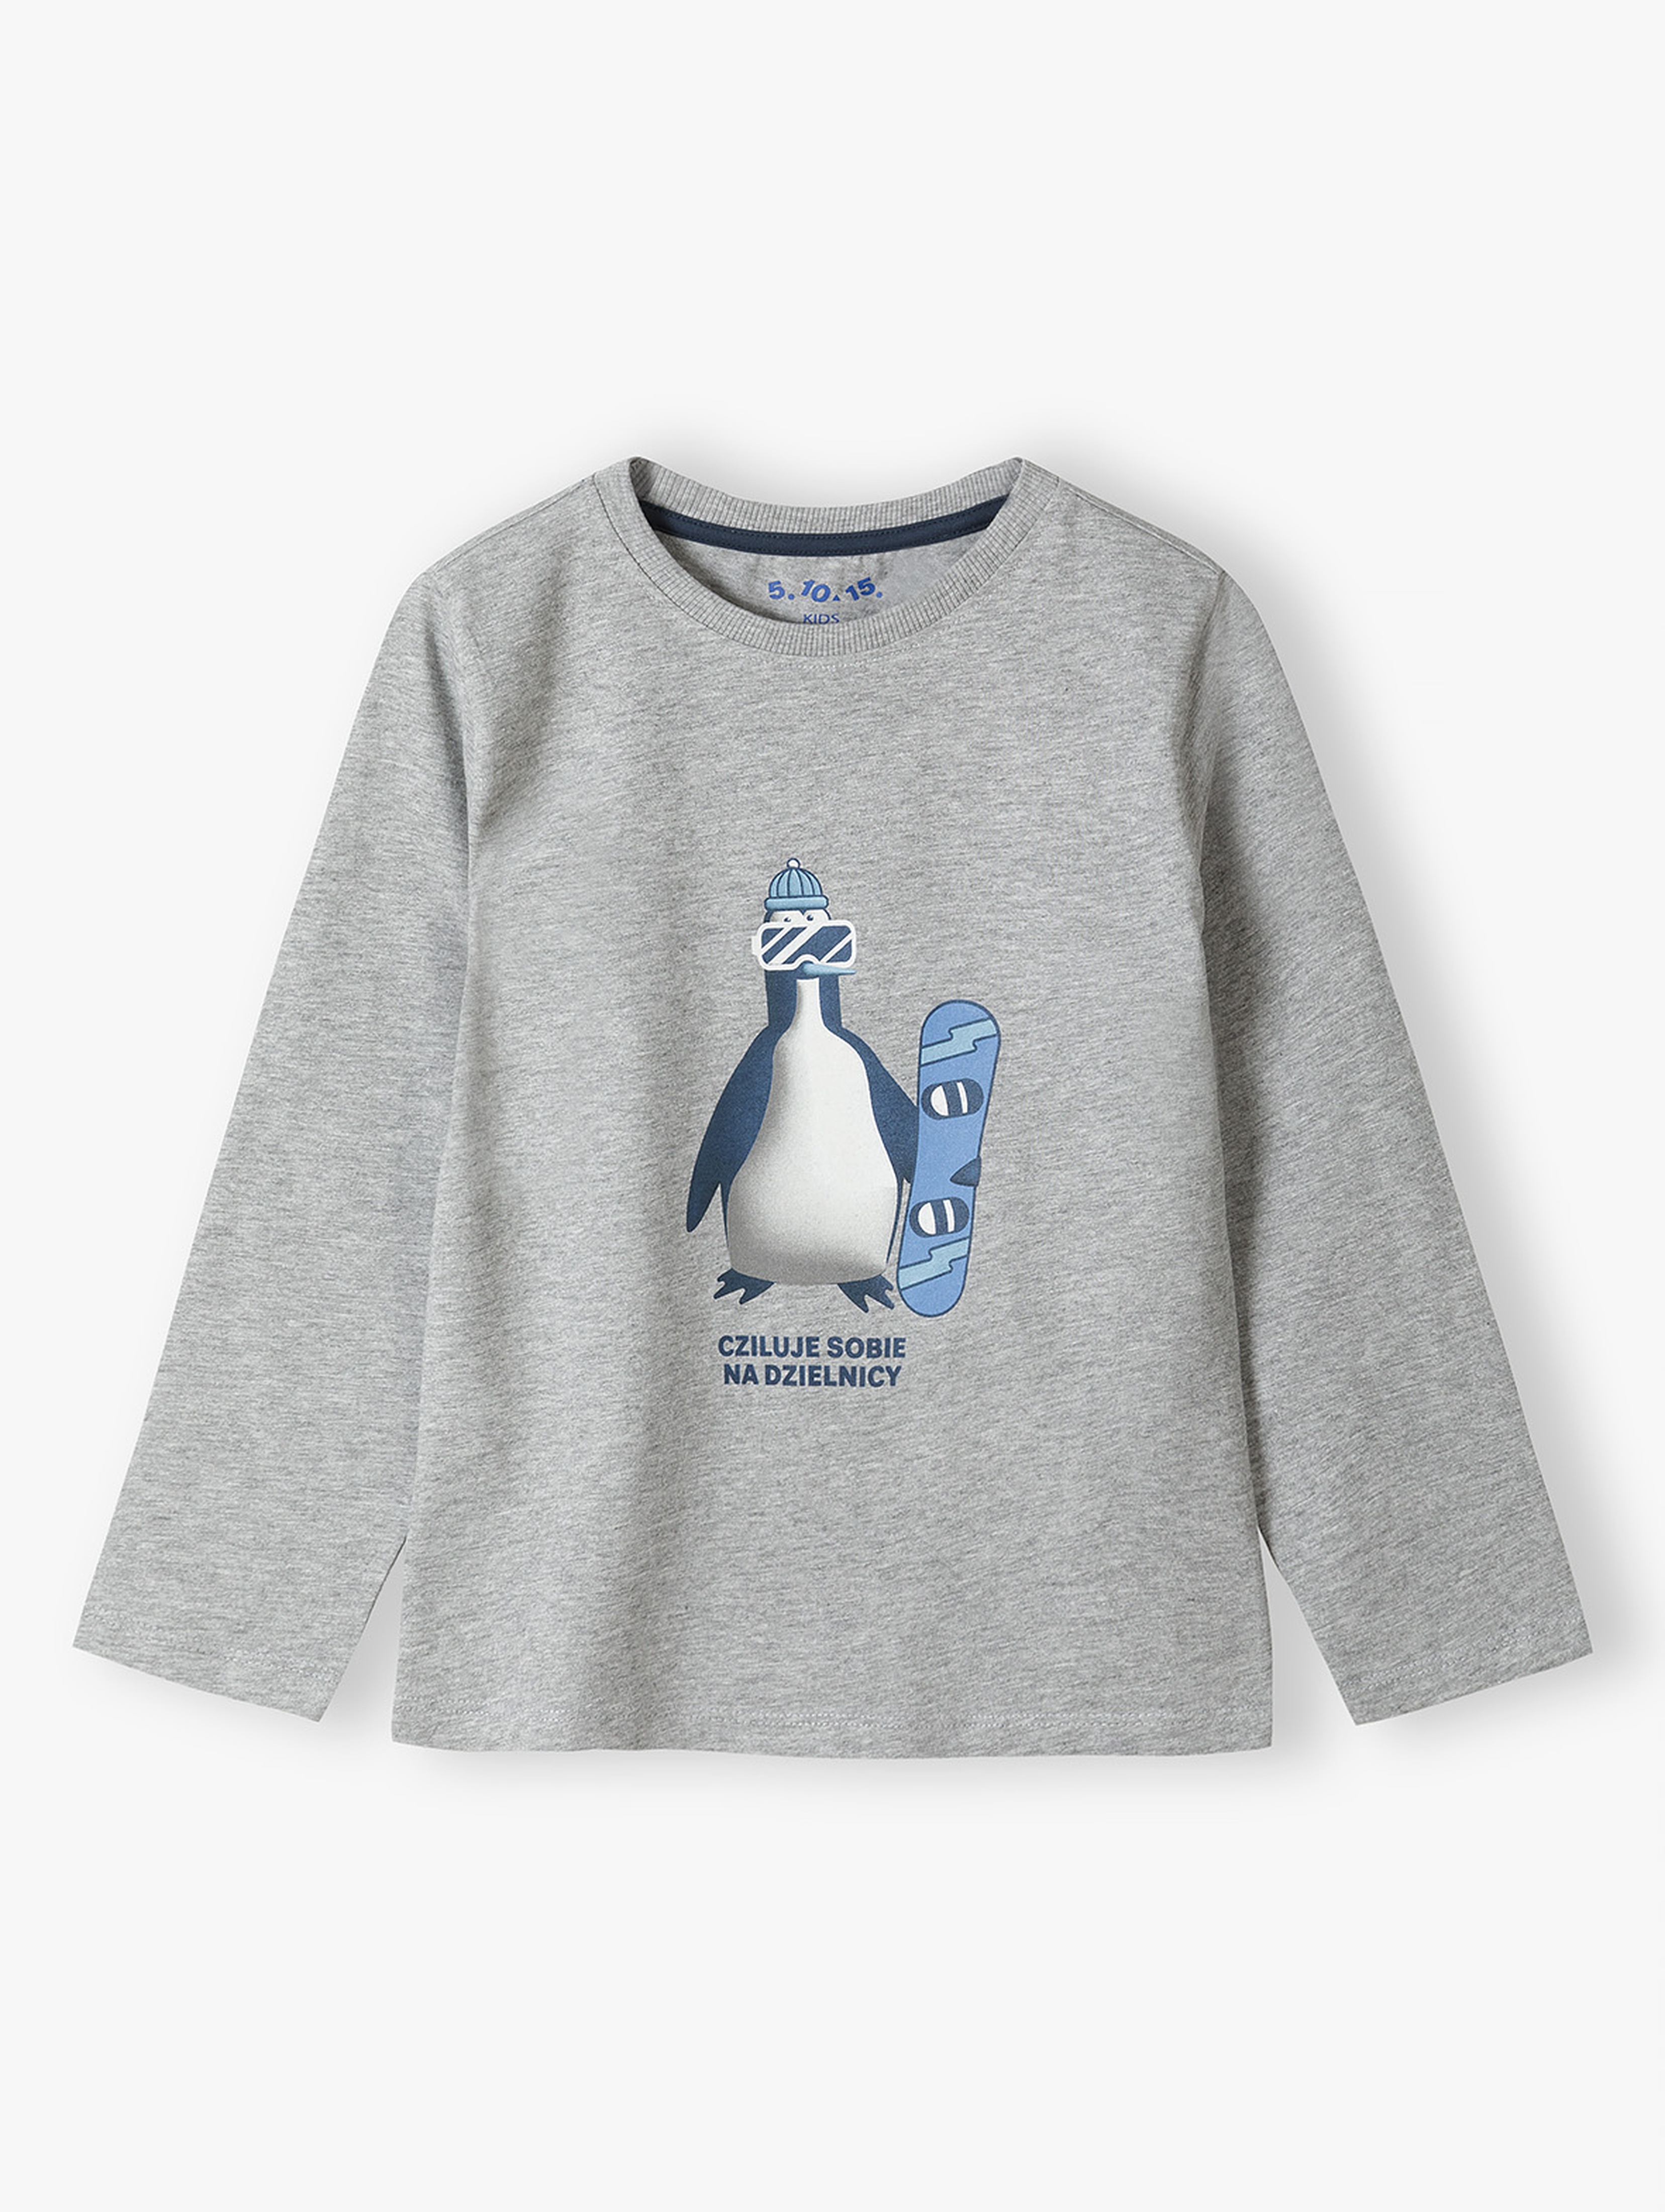 Szara bluzka dzianinowa chłopięca- pingwin